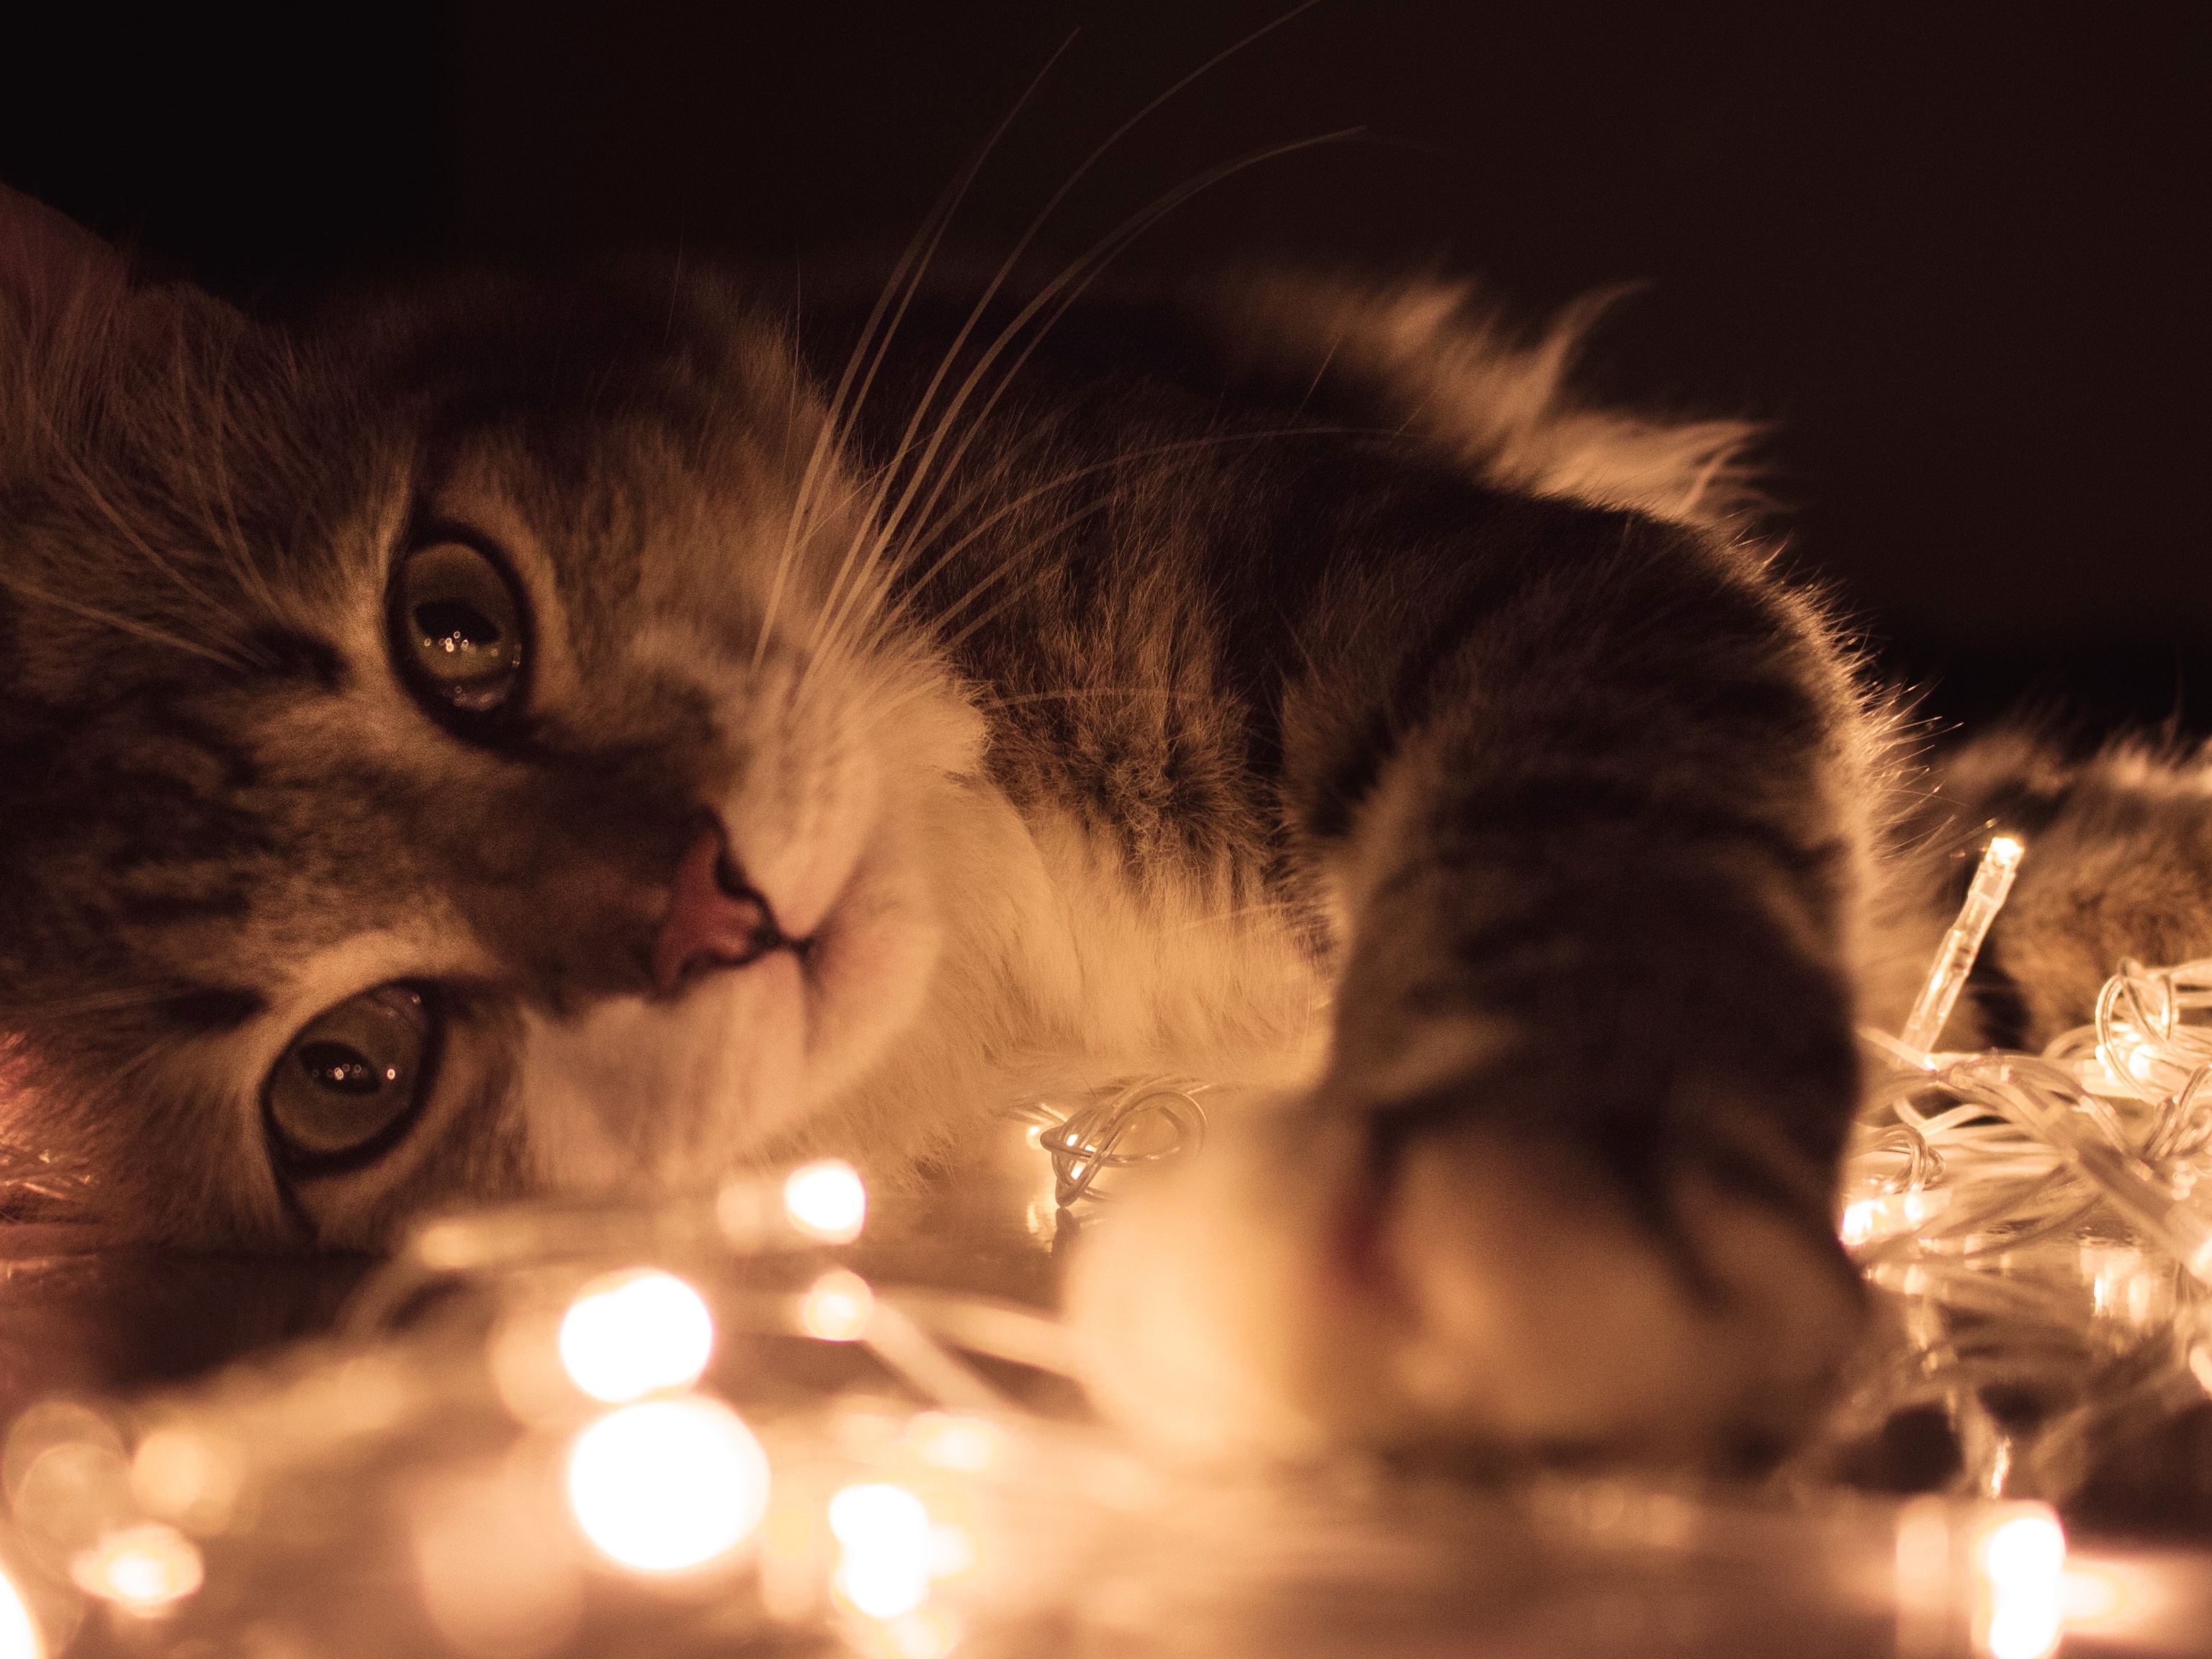 ꓖⲅⲓⲙⲟ́ⲅⲓⲟ Ⲇⲃⲉⲅⲧⲟ on Instagram: “A Energia dos Gatos Os gatos possuem uma  conexão com o mundo mágico, invisível. Assim co…